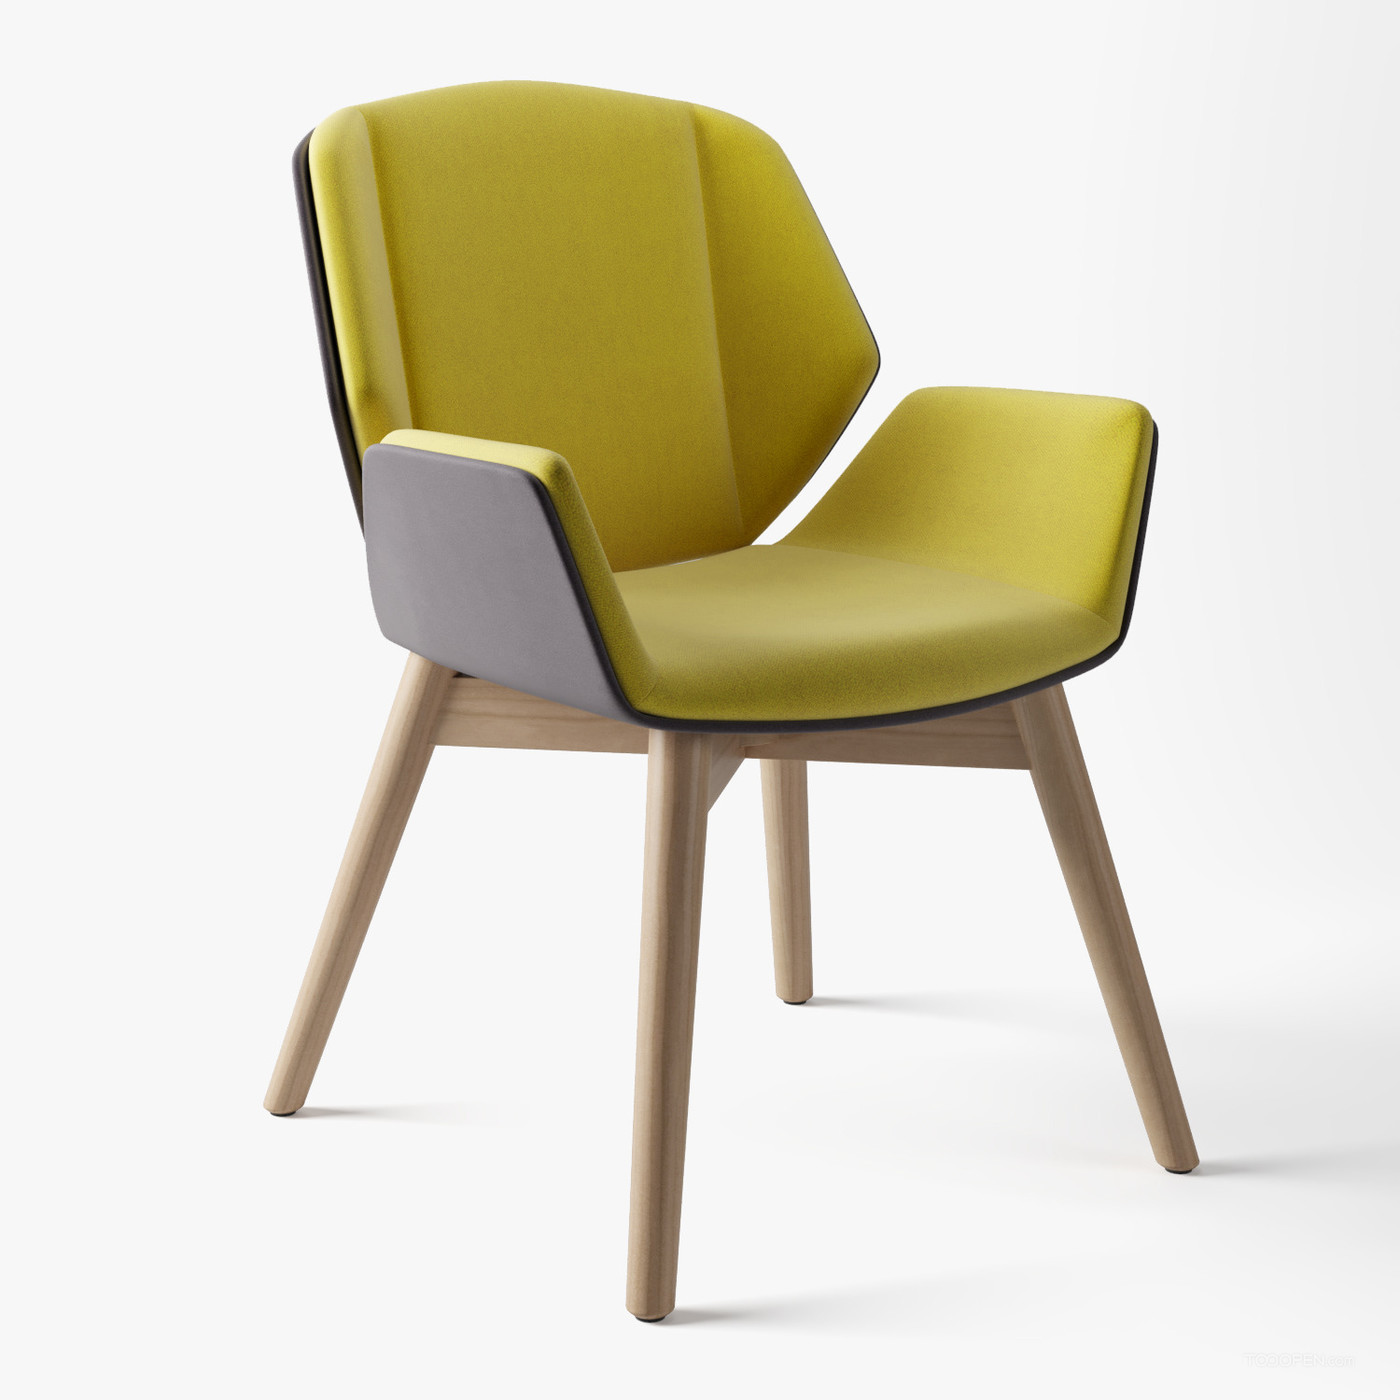 时尚简约风格的椅子家具设计欣赏-01